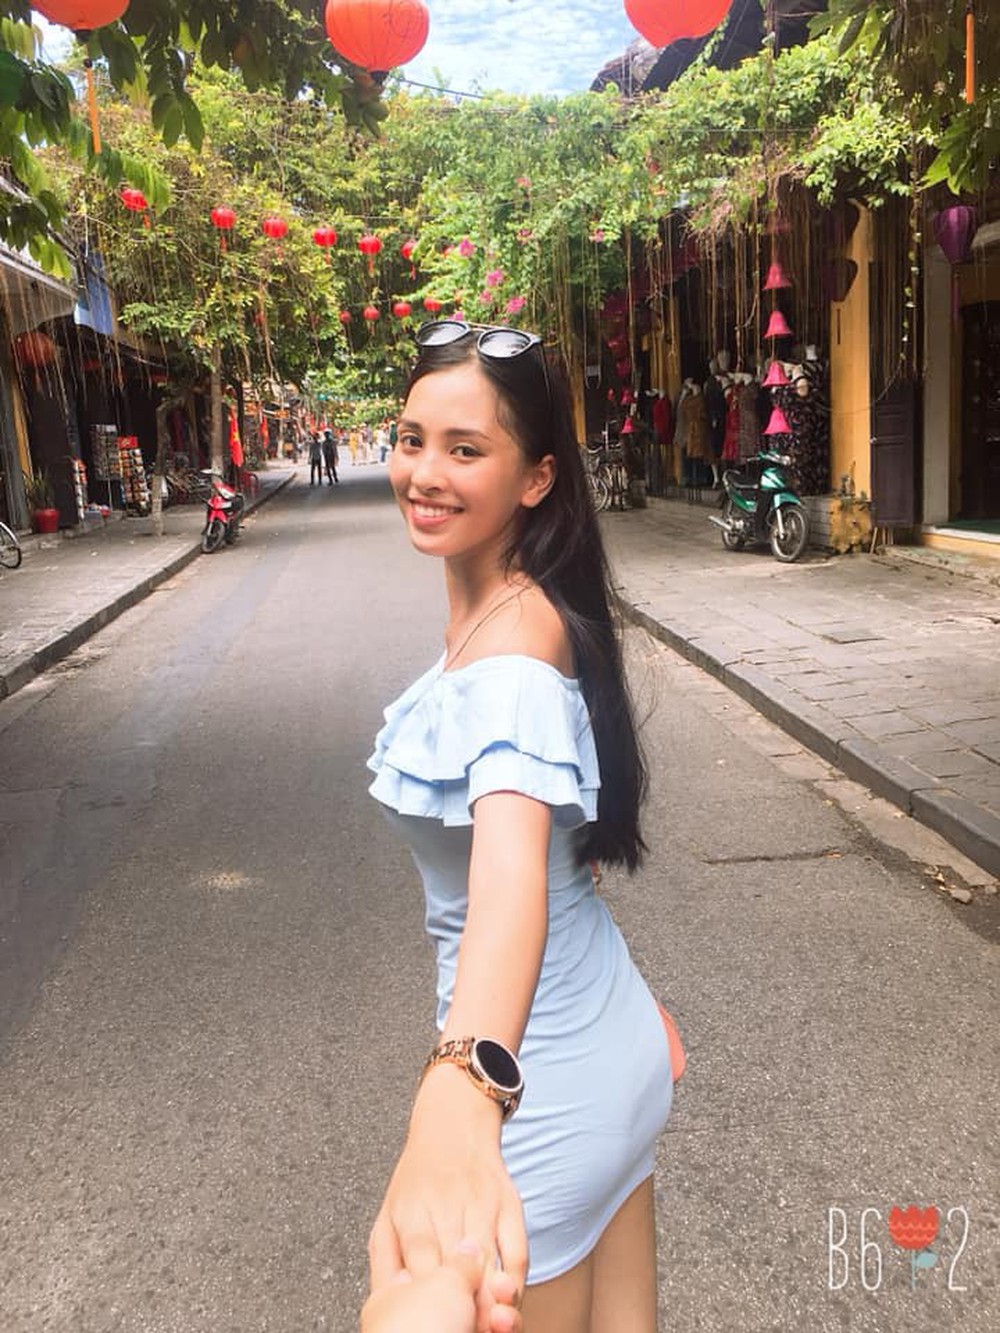 Tân hoa hậu Trần Tiểu Vy thể hiện bản thân thế nào trên mạng xã hội? - Ảnh 2.